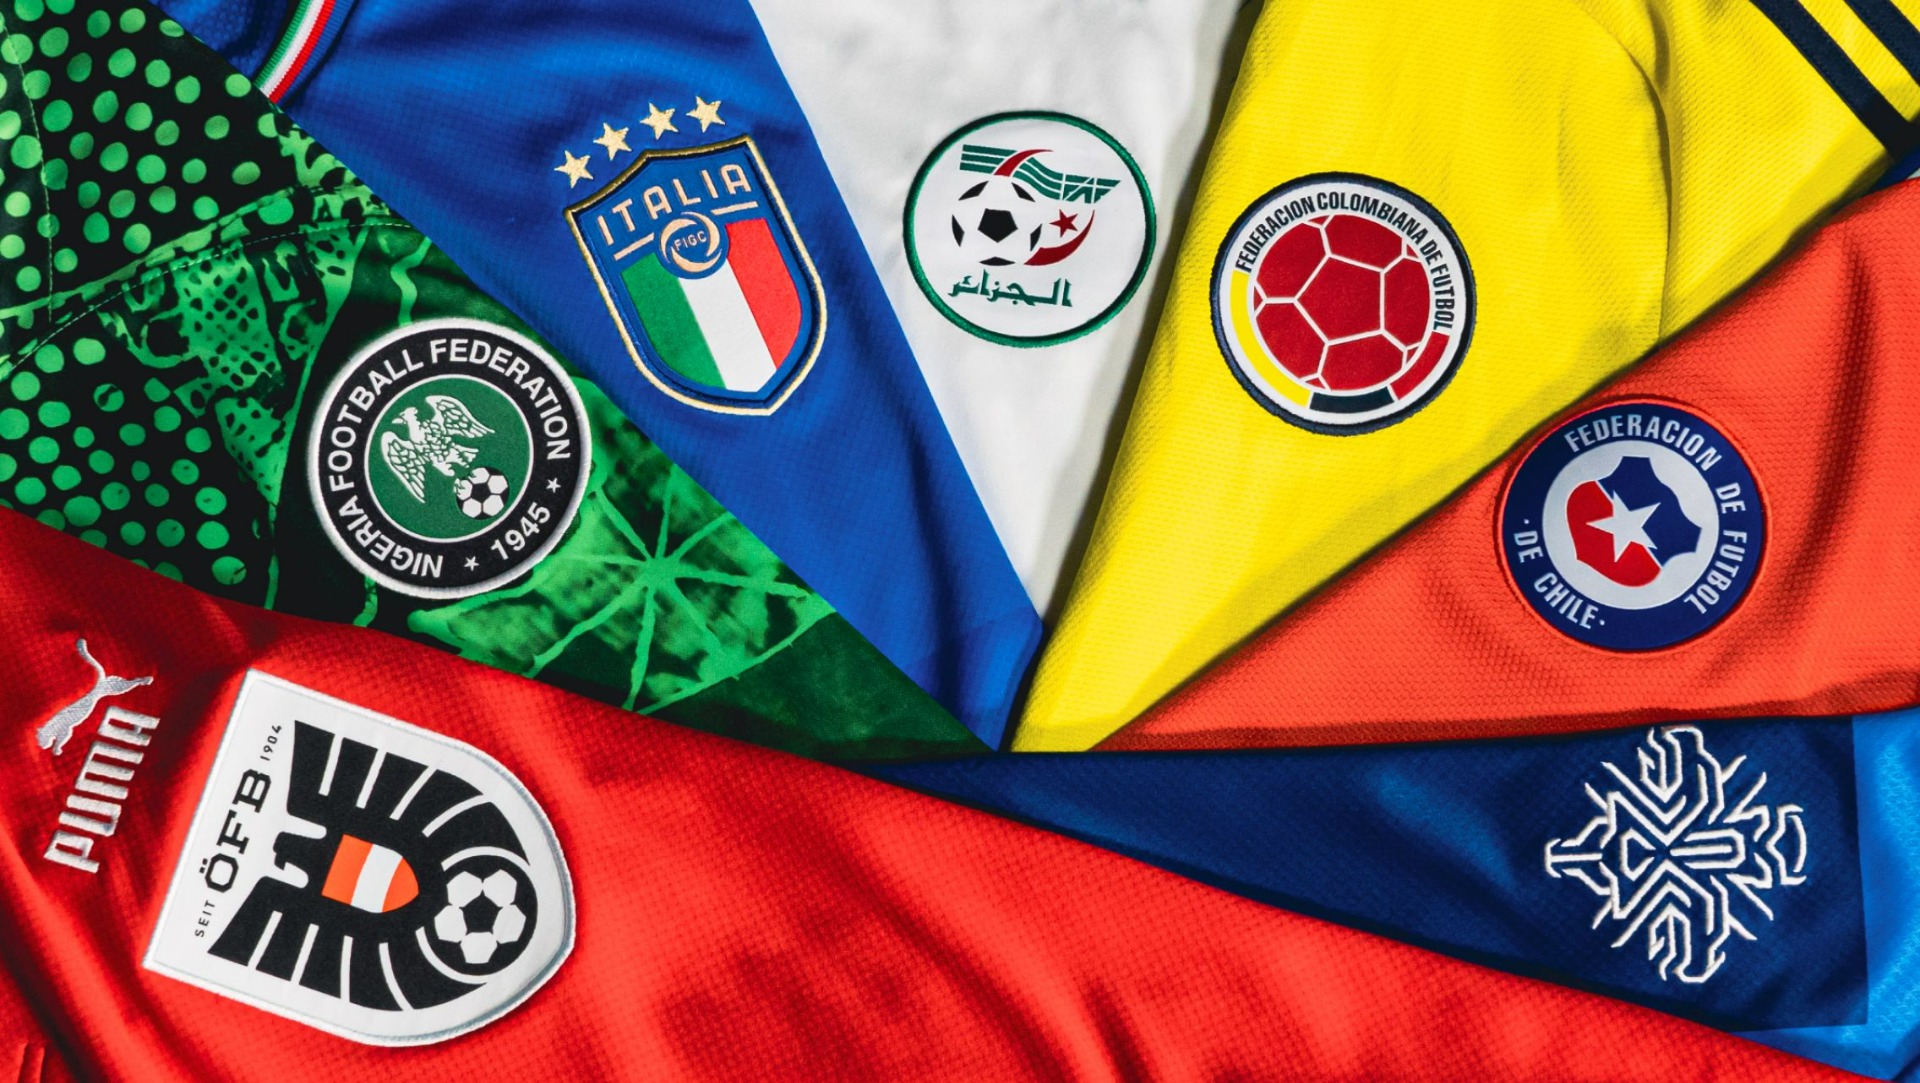 Deze prachtige shirts zien we helaas niet op het WK 2022